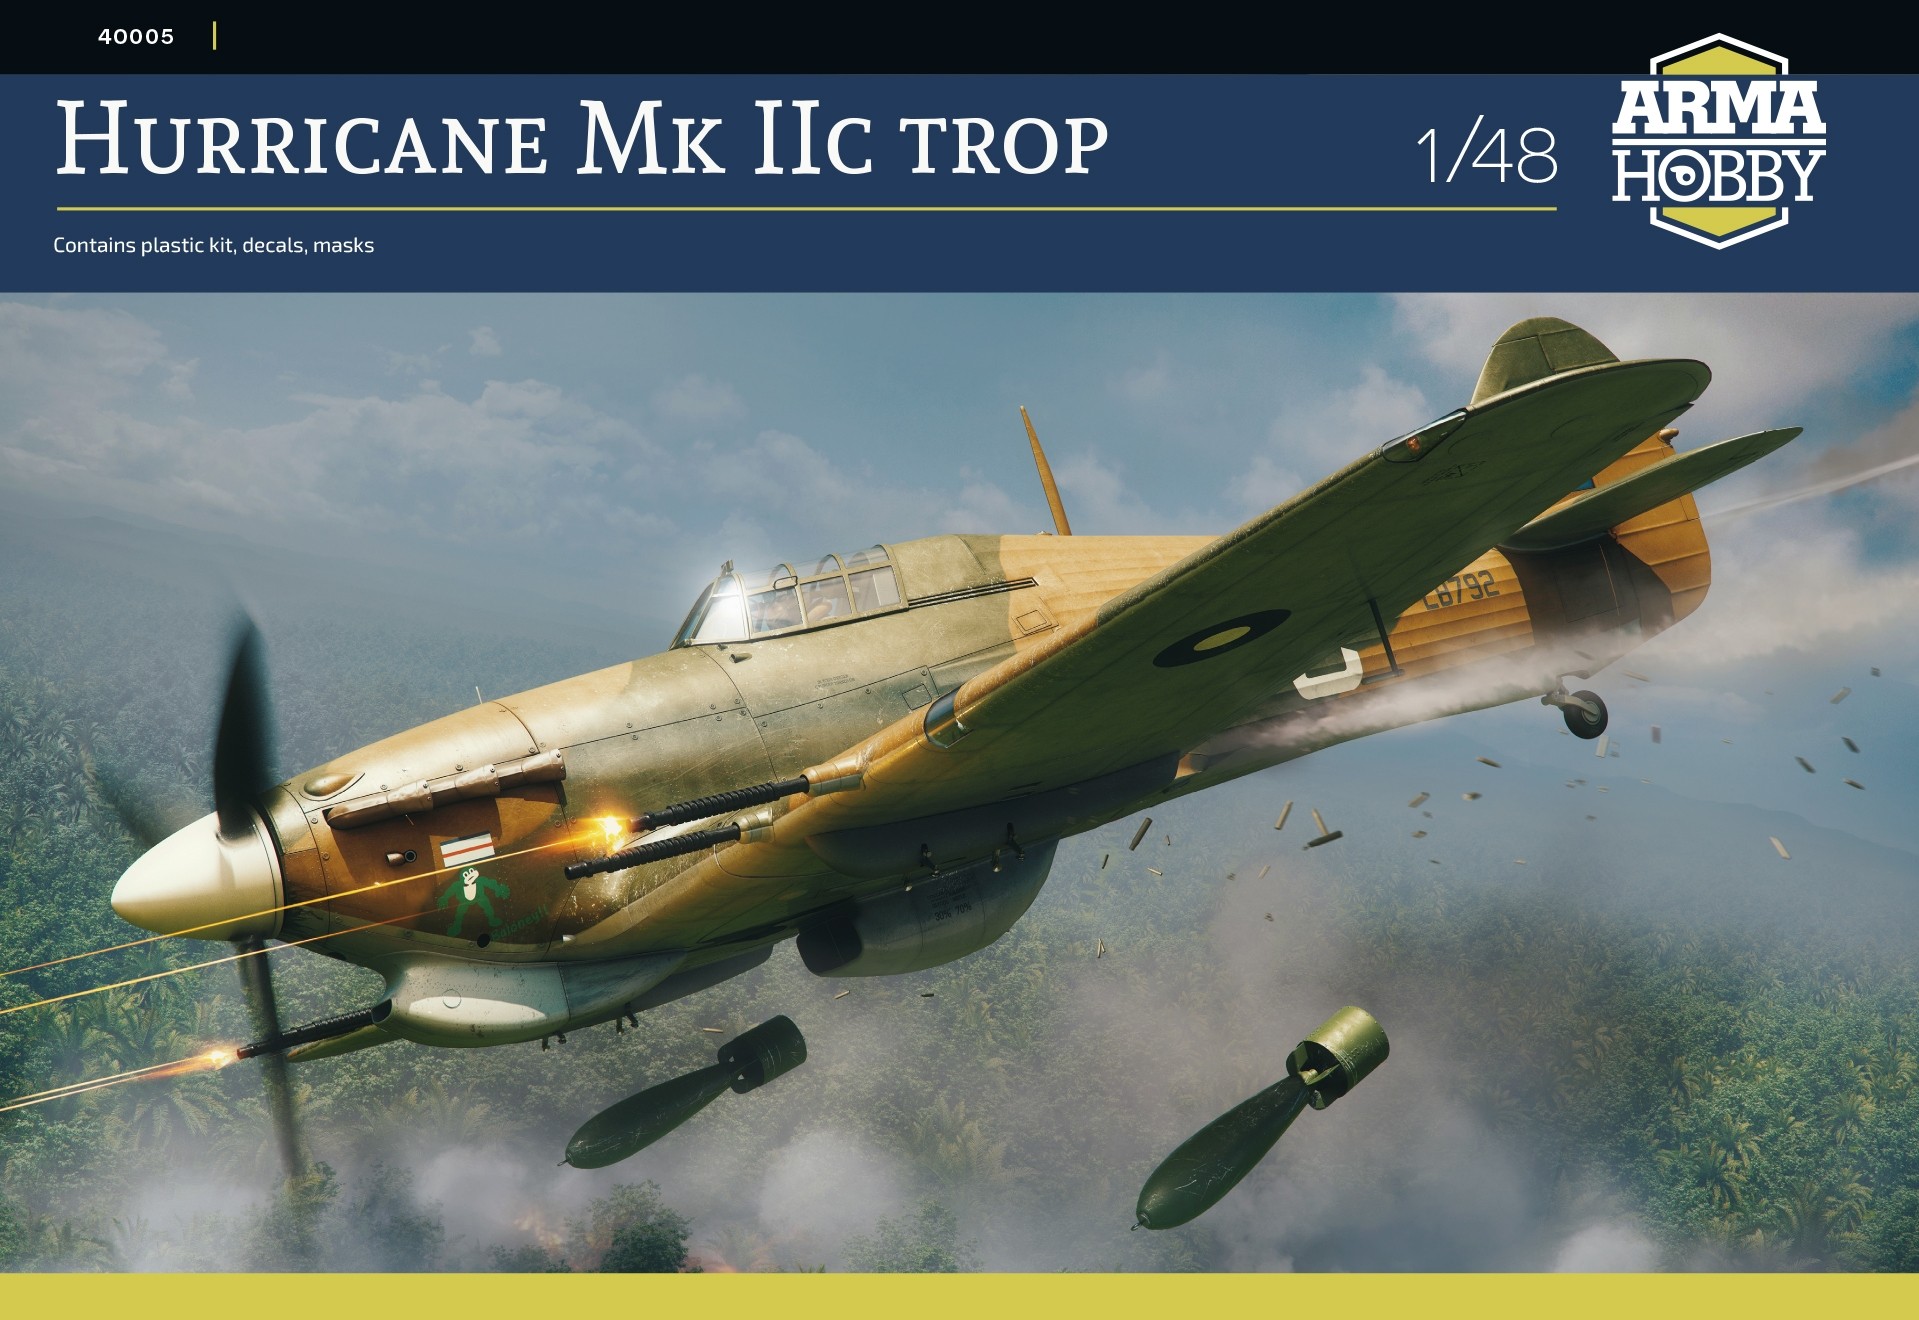 Hurricane Mk.IIc trop